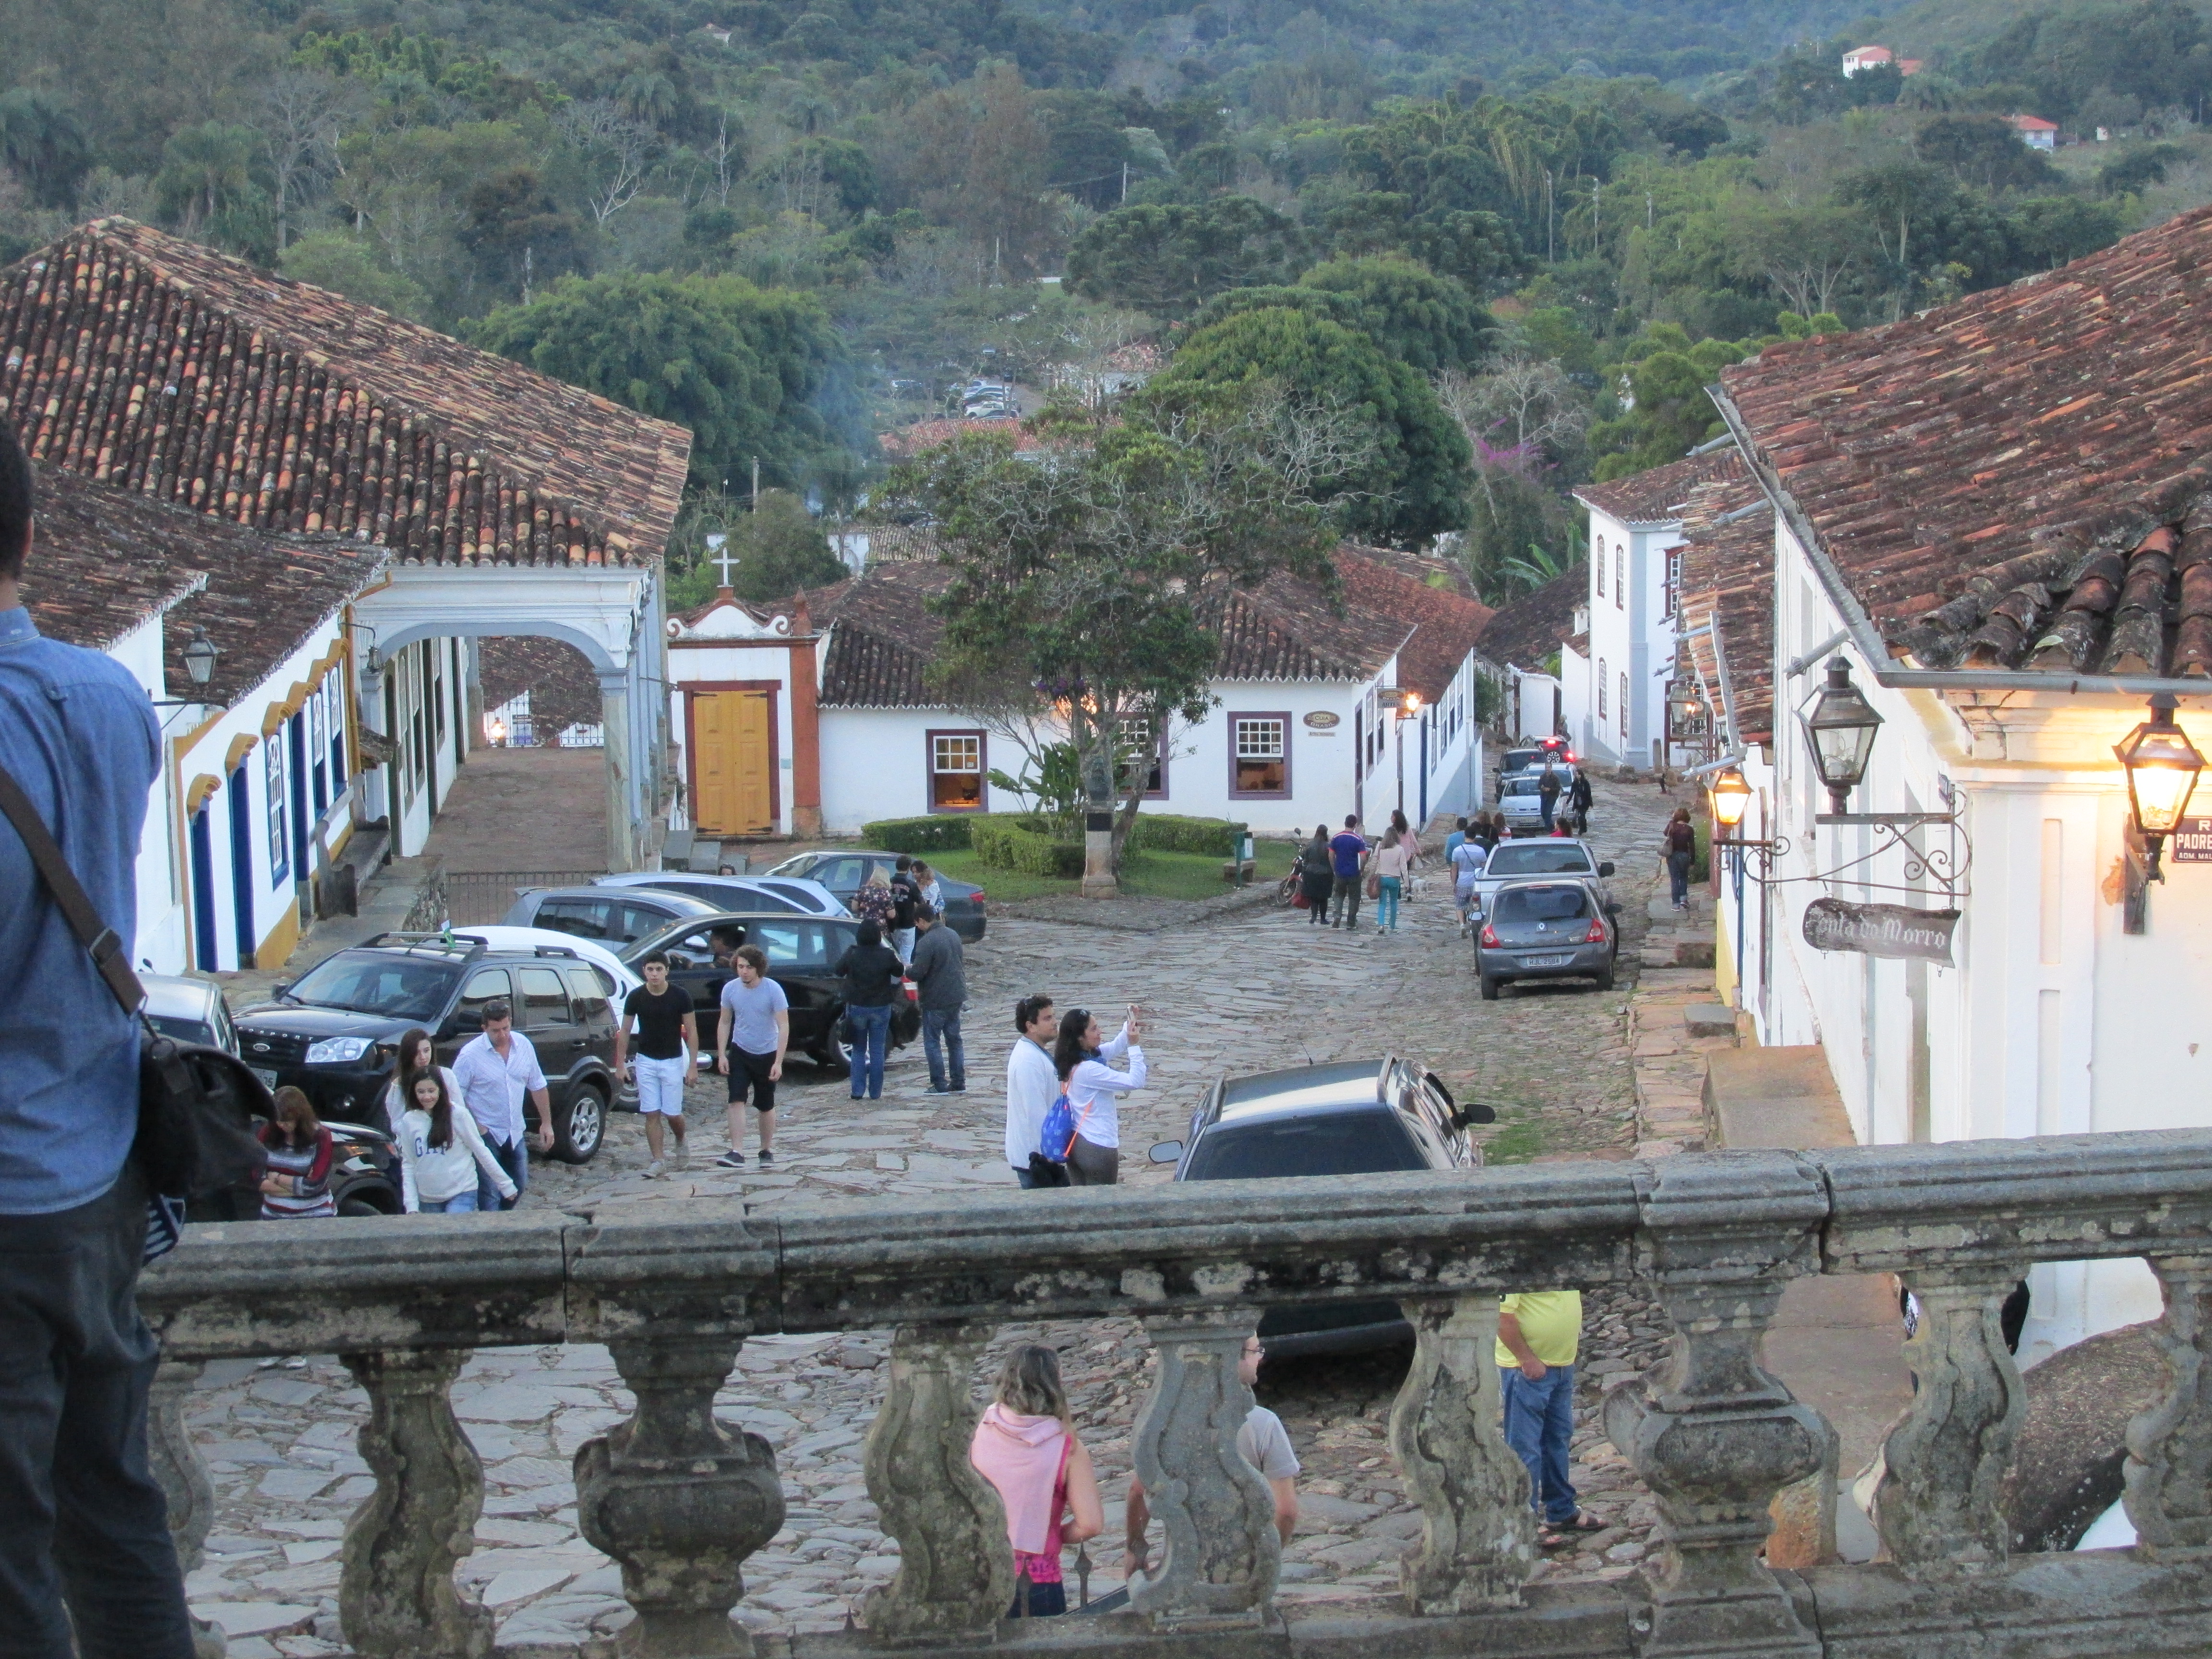 img 1268 - Tiradentes (Brasil) y un paseo por la ruta del oro en Minas Gerais